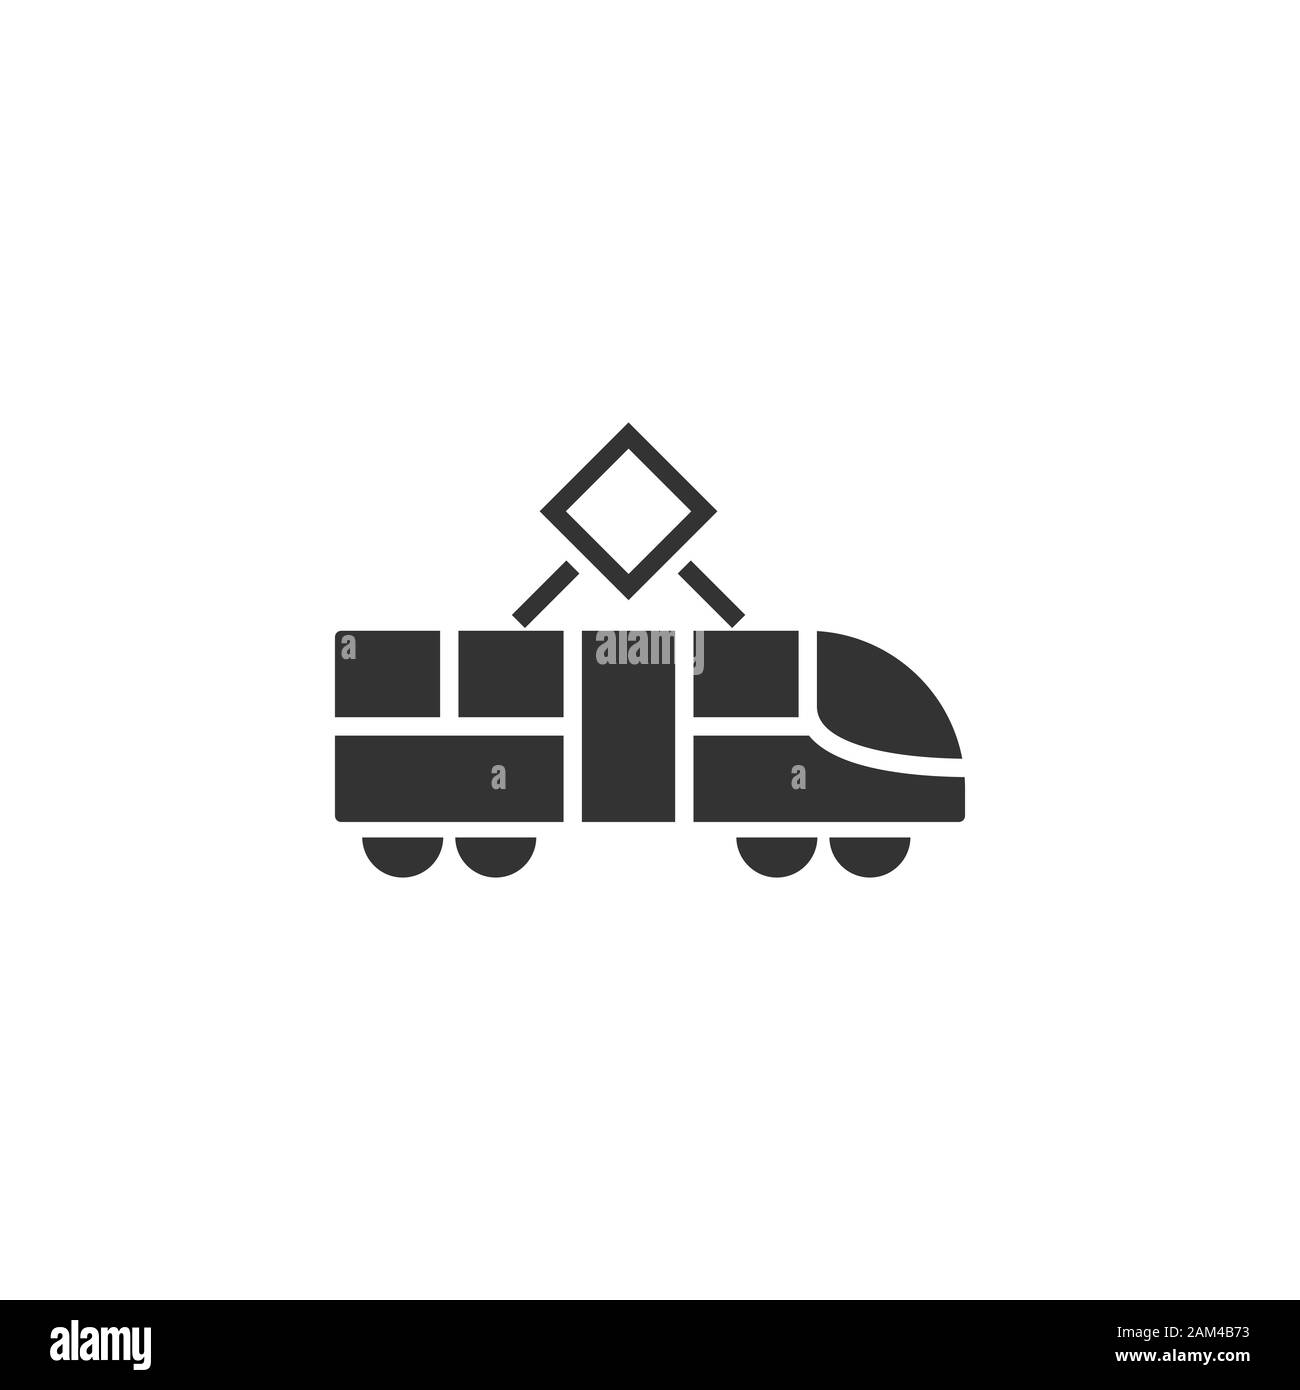 L'icône de métro dans le style. Métro Train vector illustration on white background isolés. Fret ferroviaire concept d'entreprise. Illustration de Vecteur